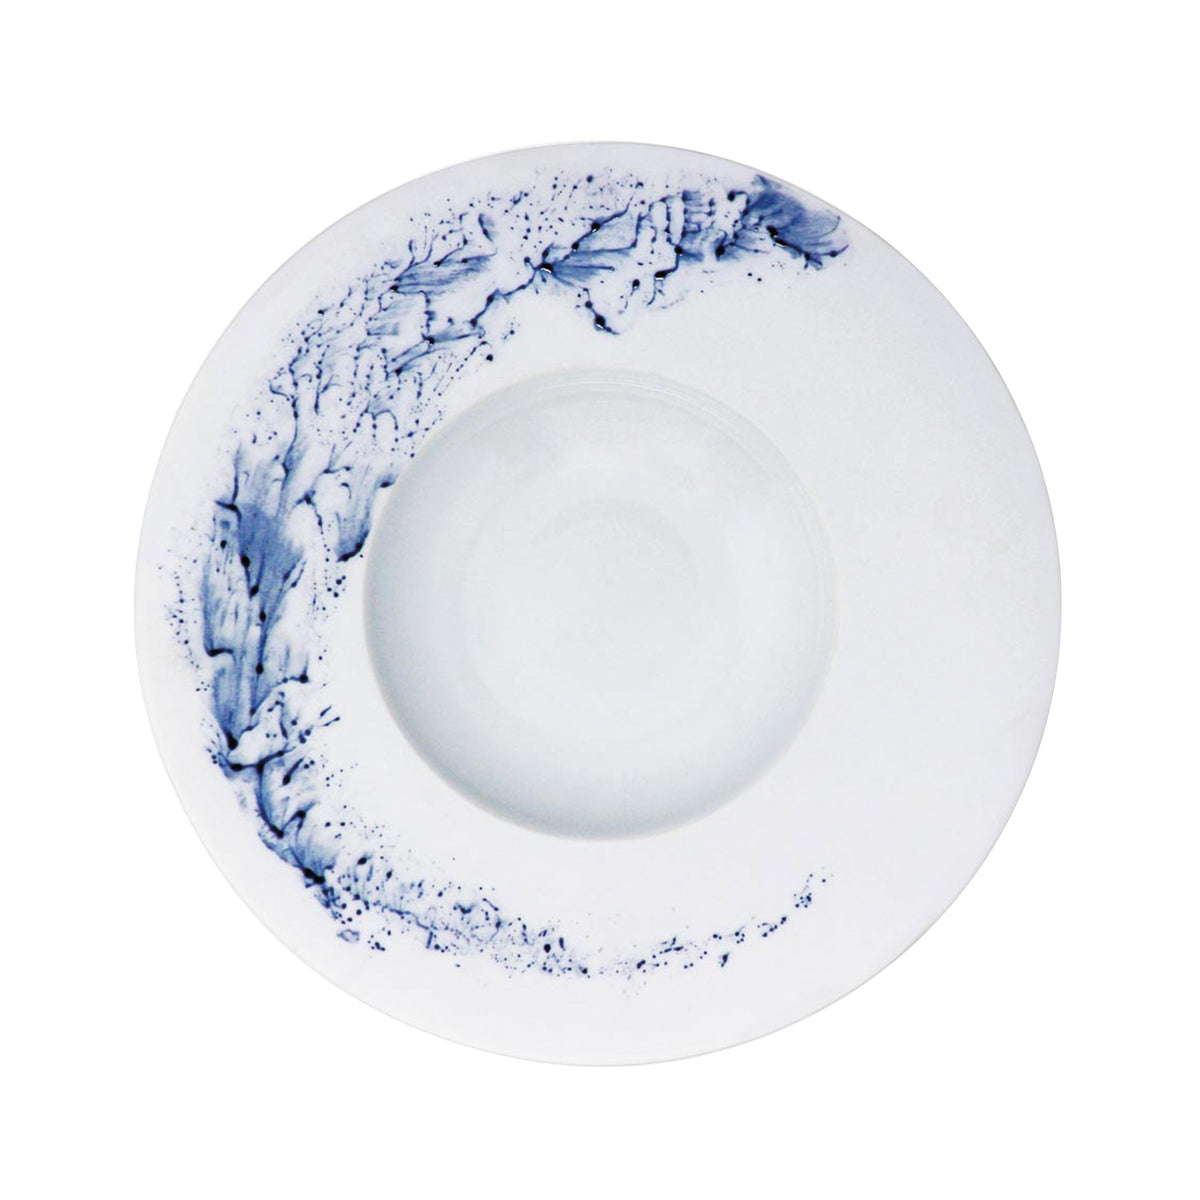 BLUE IMPRESSION - Rim soup plate, large